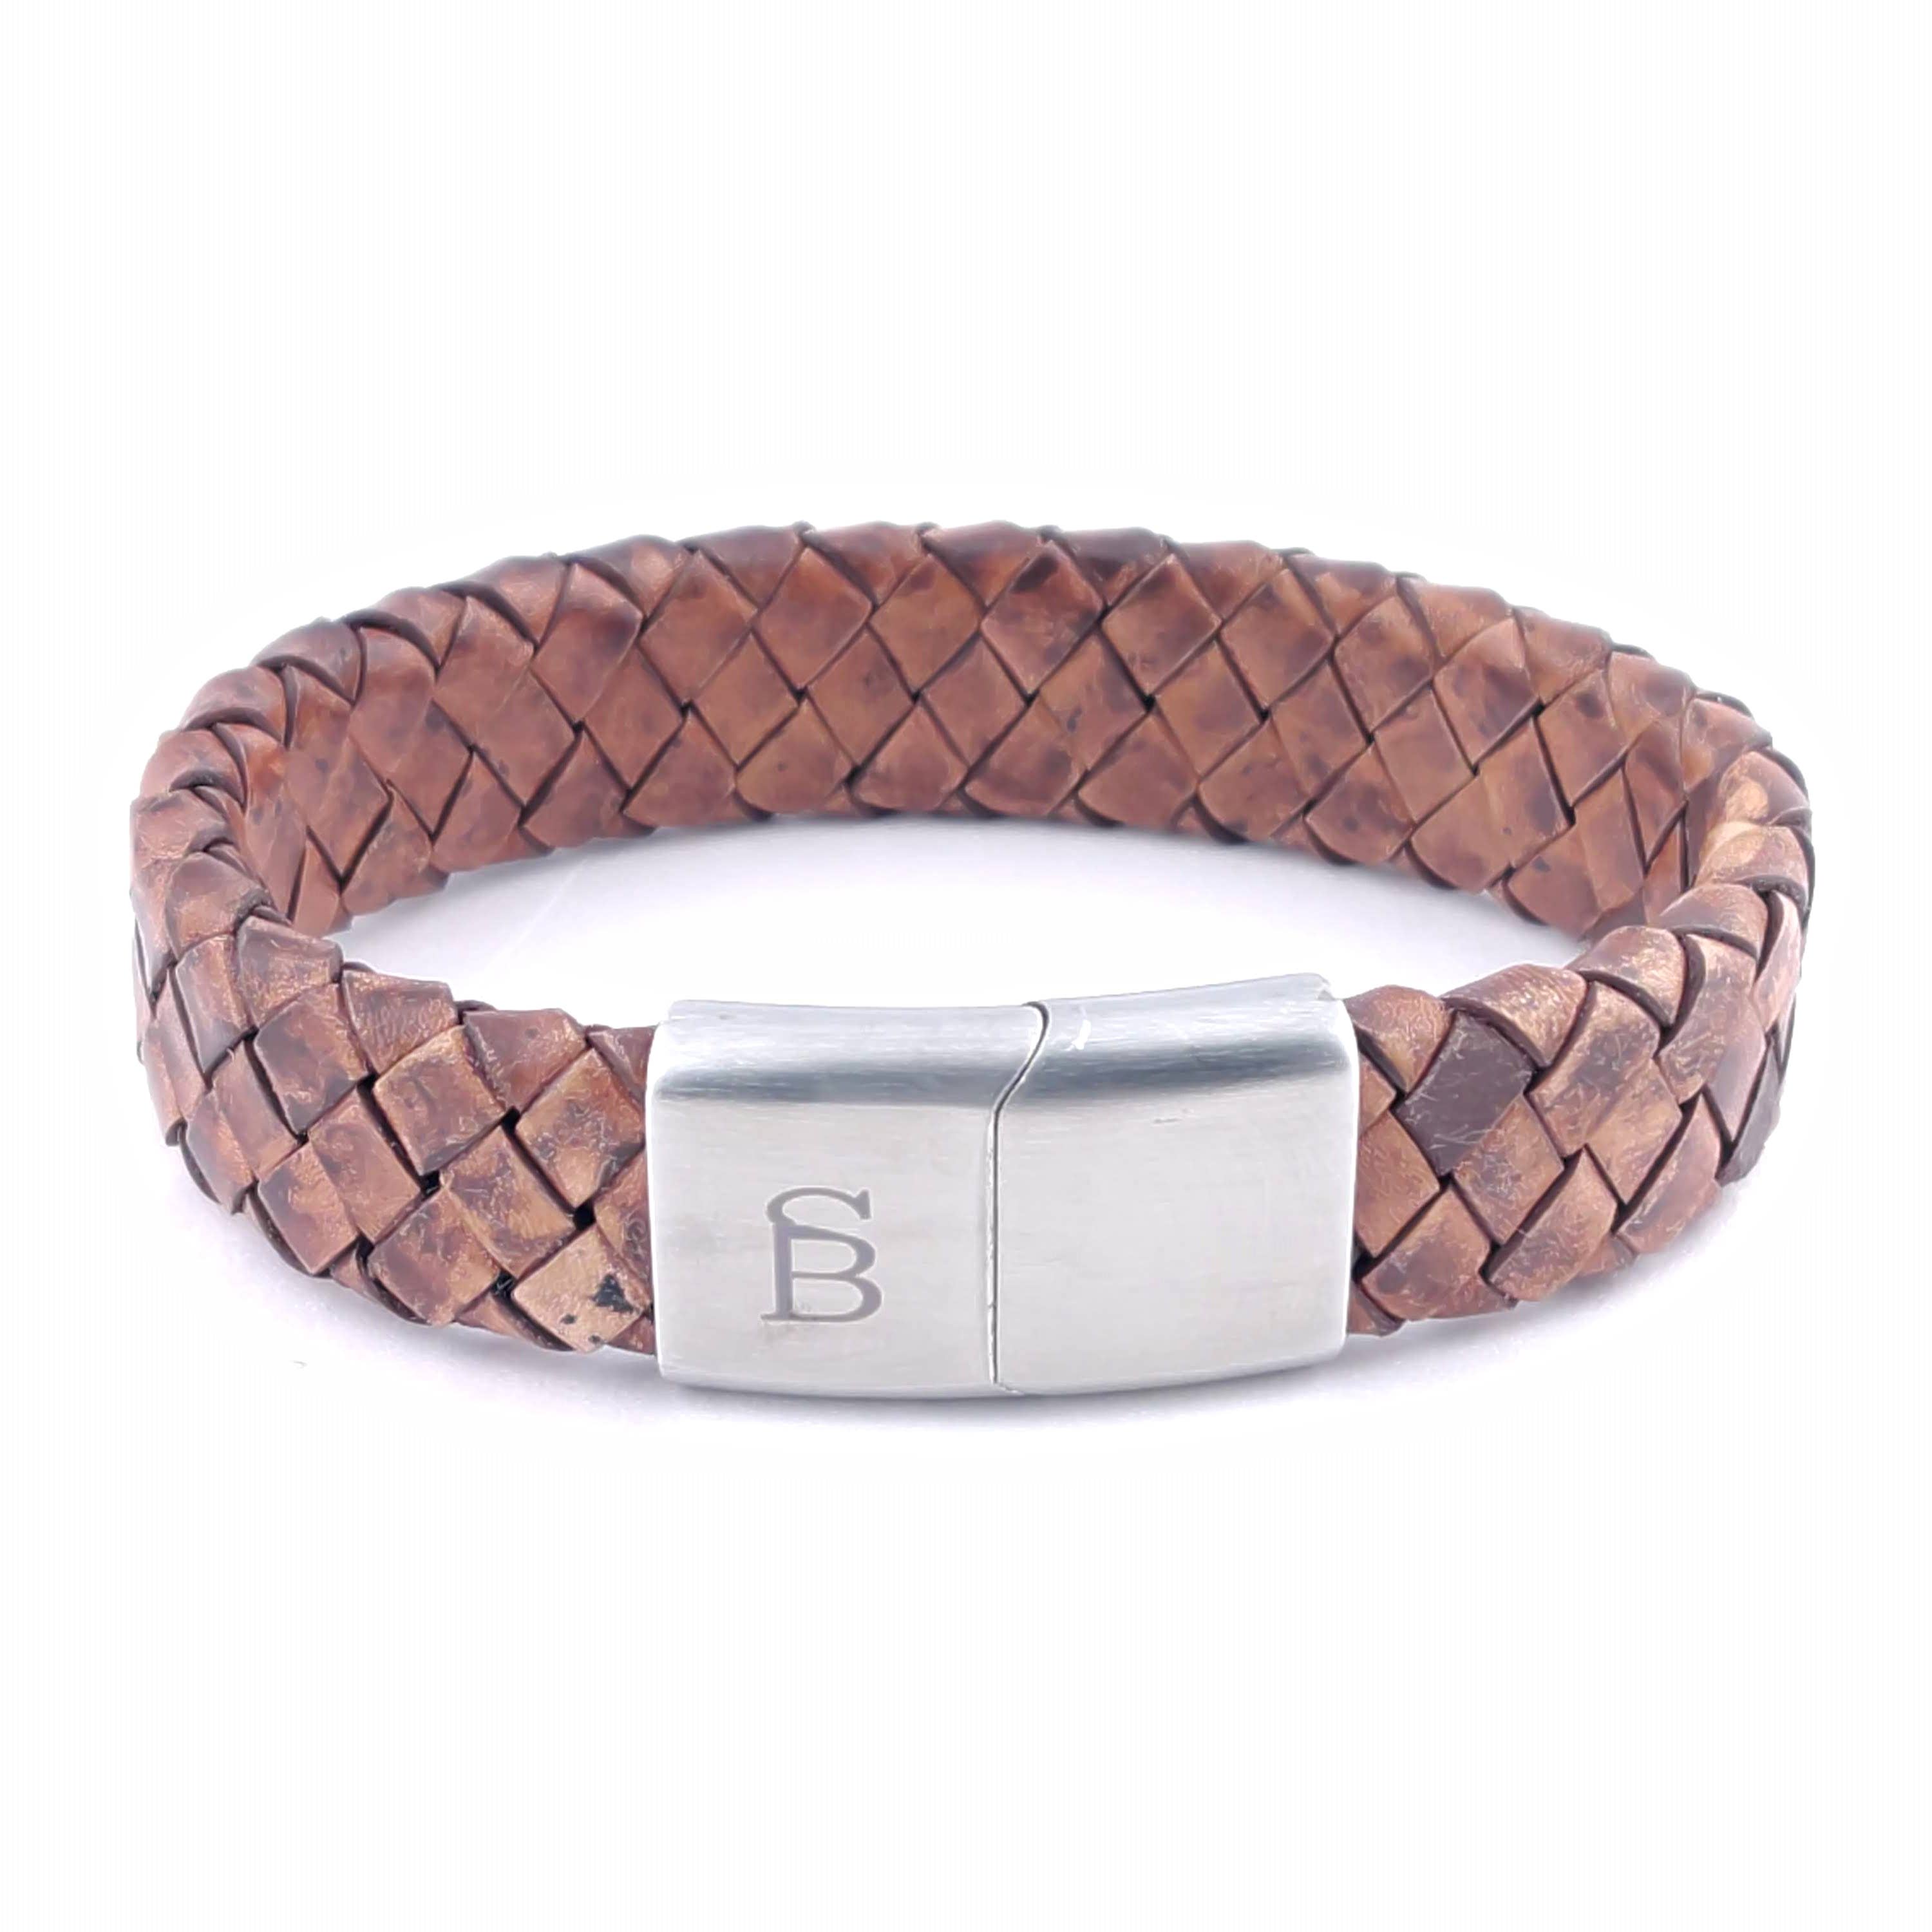 Steel and Barnett - Leather Bracelet Preston - Caramel